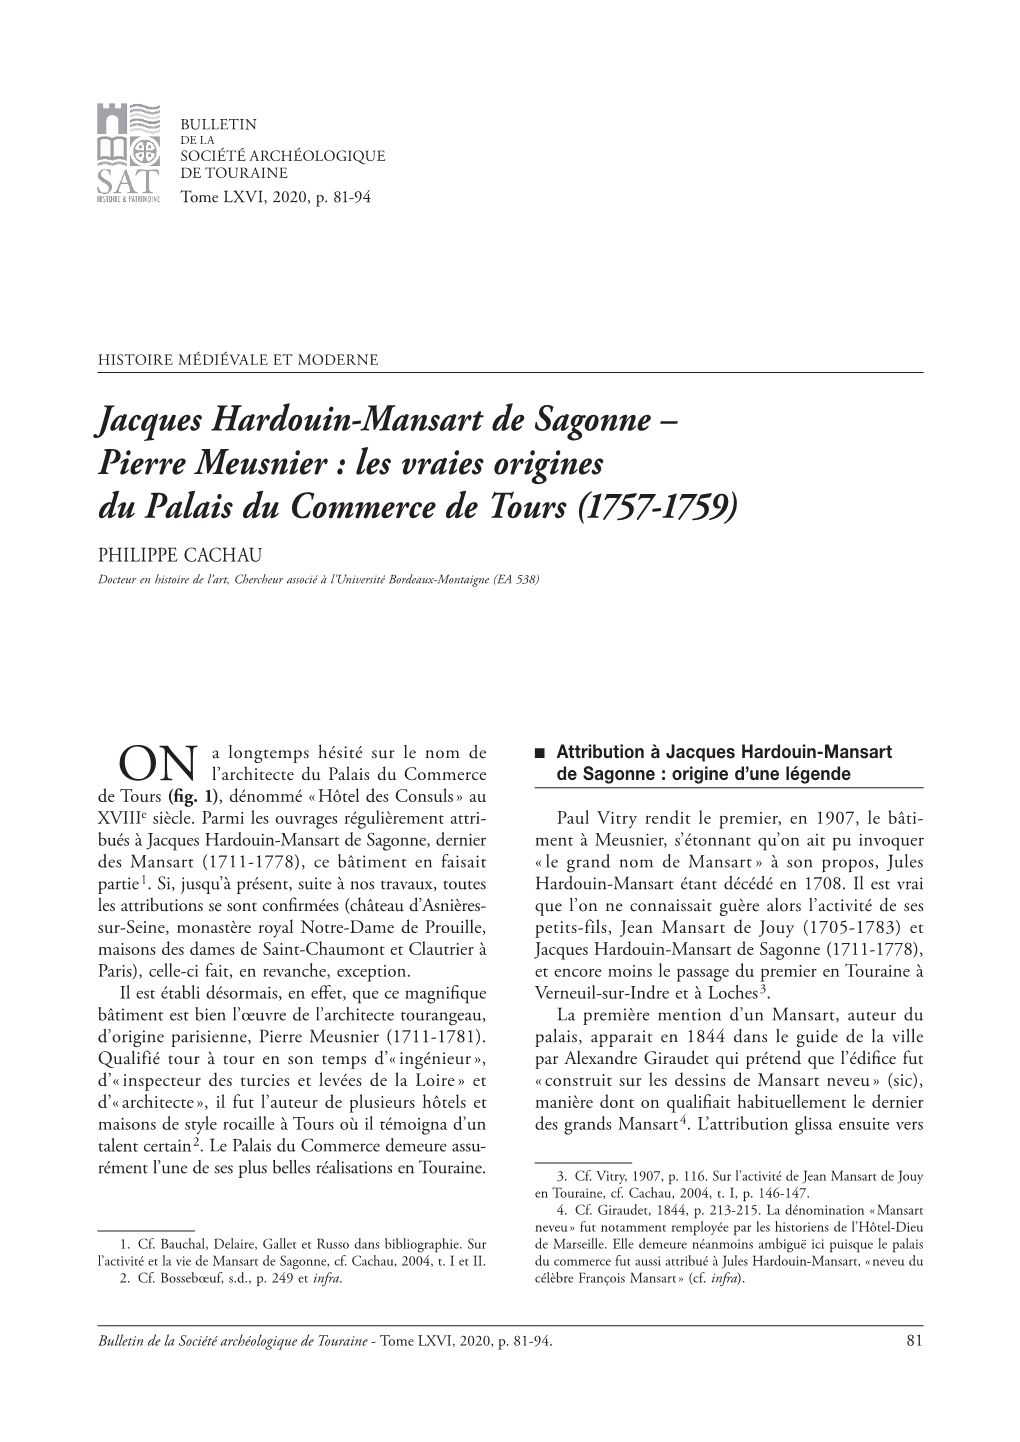 Jacques Hardouin-Mansart De Sagonne – Pierre